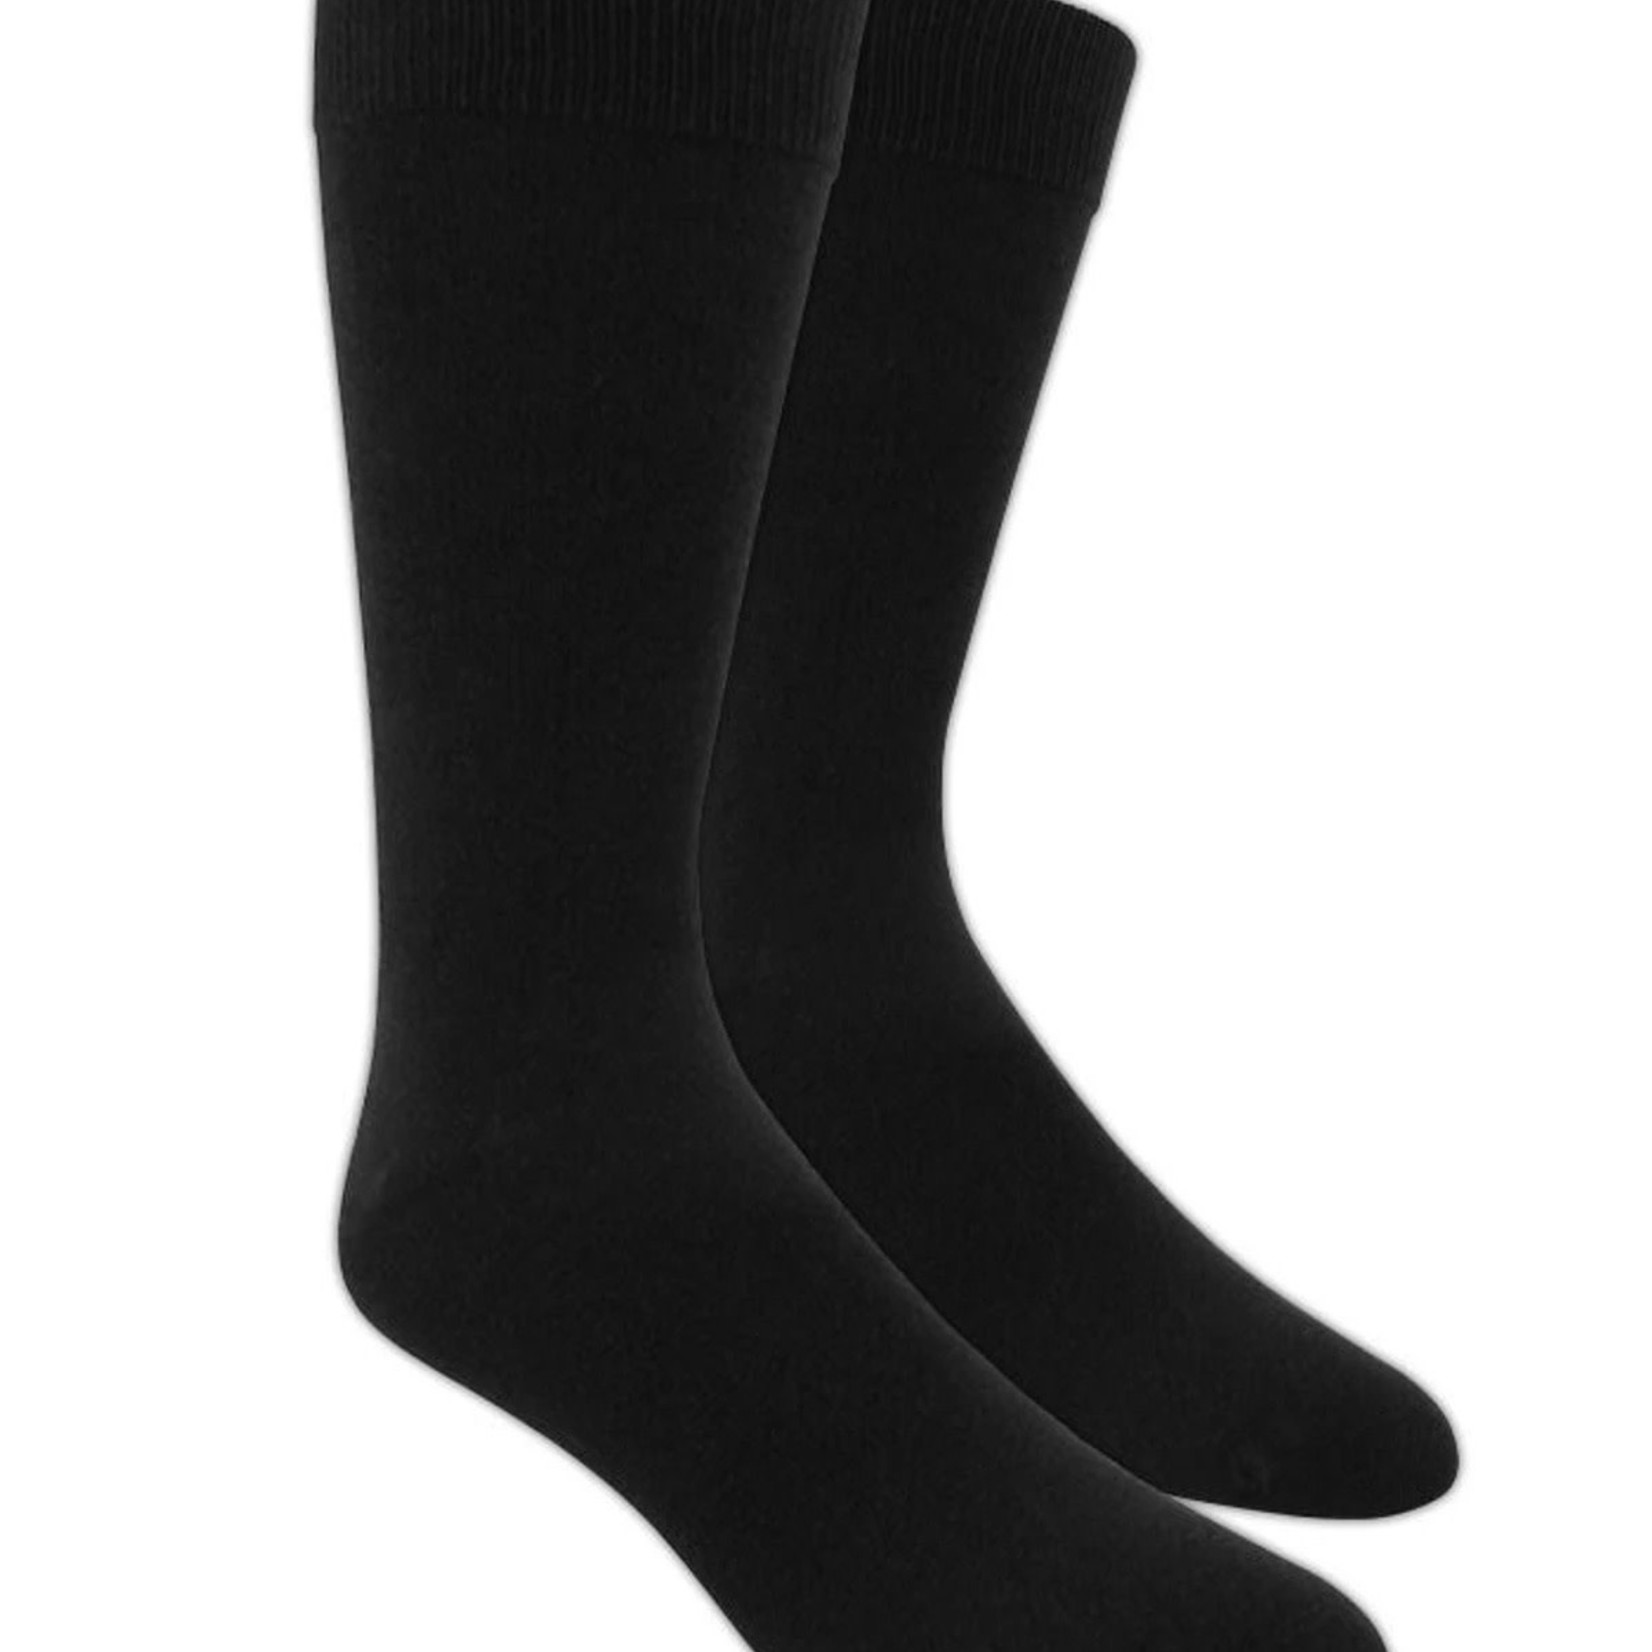 Solid Black Dress Socks